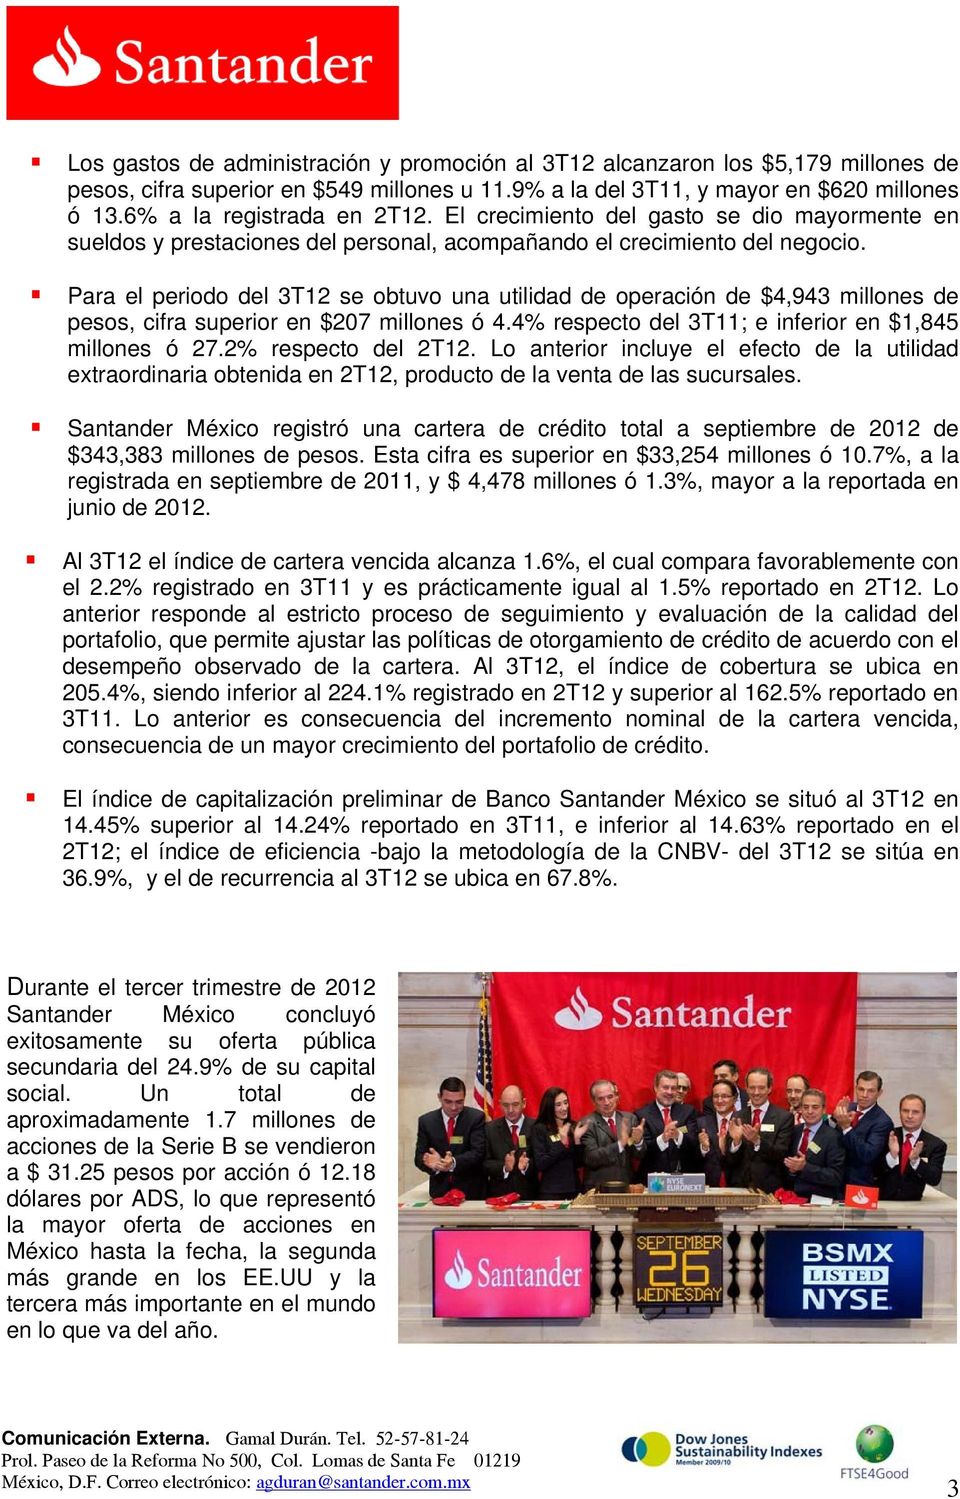 Para el periodo del 3T12 se obtuvo una utilidad de operación de $4,943 millones de pesos, cifra superior en $207 millones ó 4.4% respecto del 3T11; e inferior en $1,845 millones ó 27.